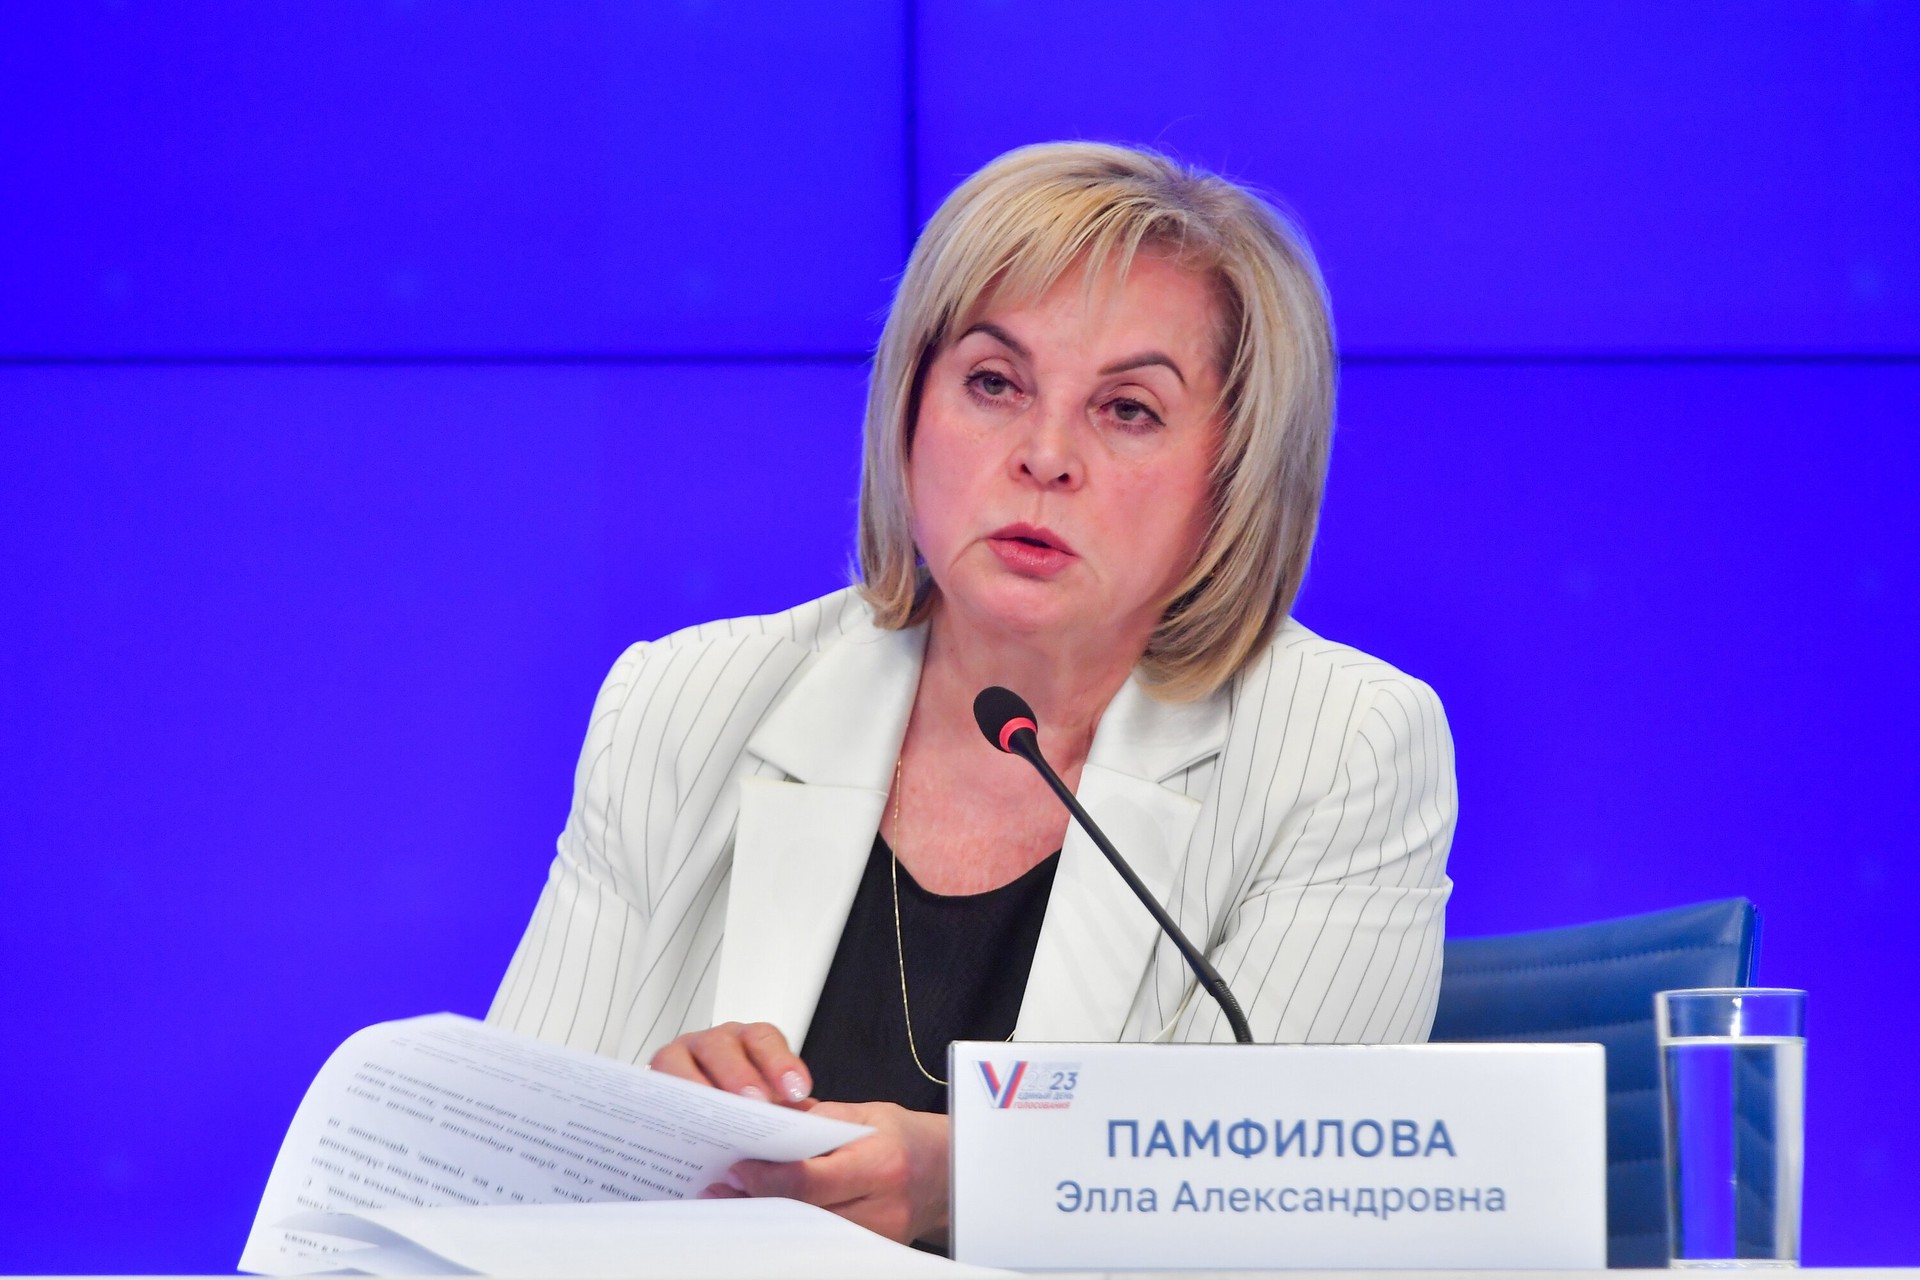 Памфилова заявила, что извне ведётся интенсивная работа по созданию фона недоверия к выборам в РФ